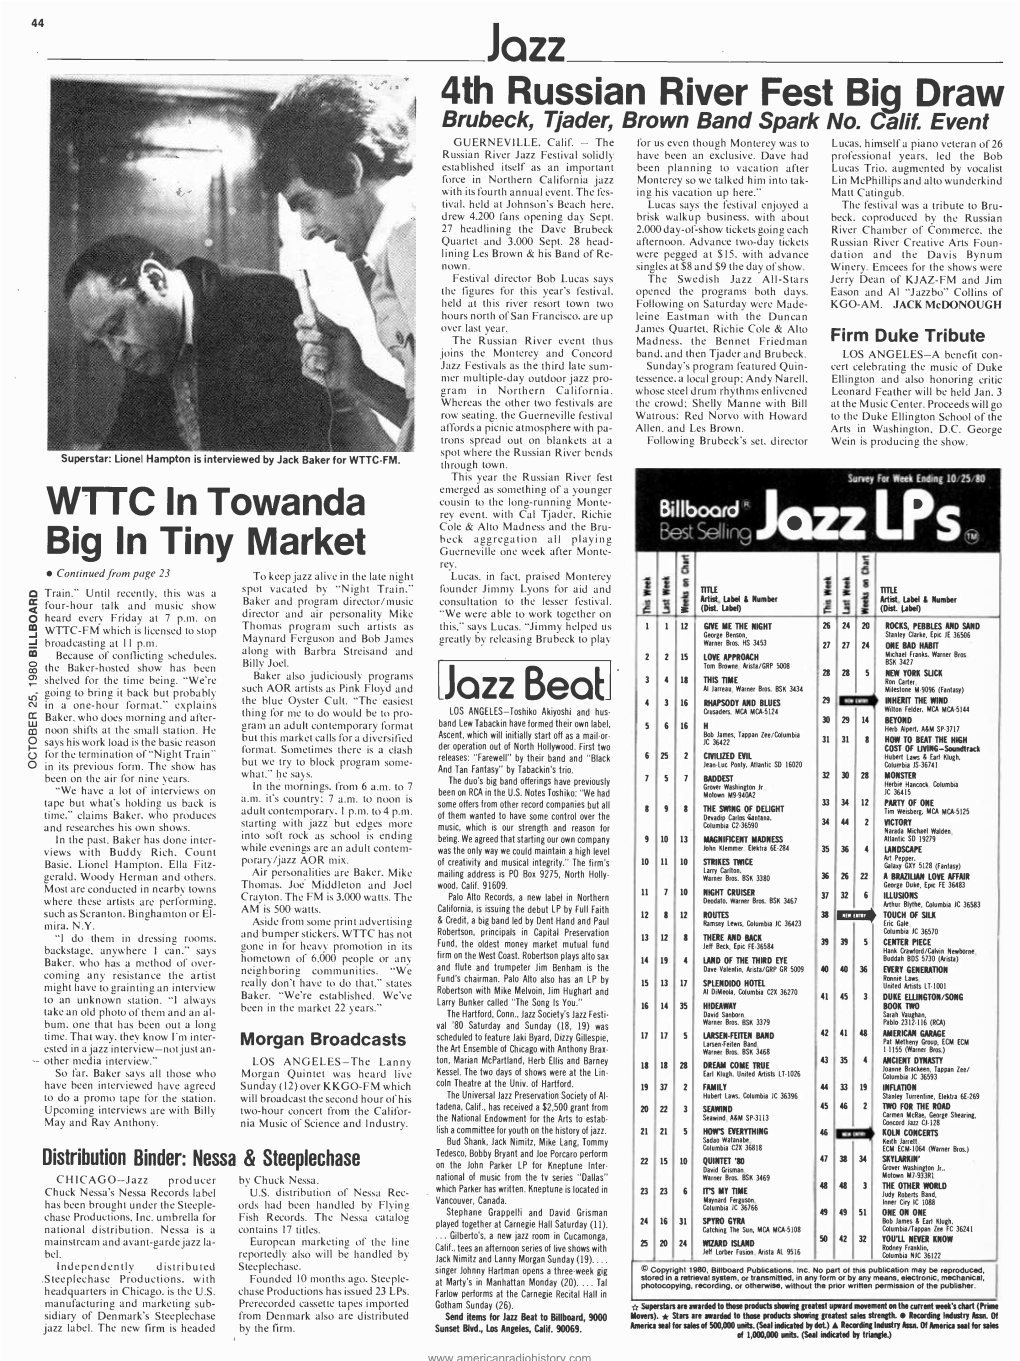 Jazz 4Th Russian River Fest Biq Draw WTTC in Towanda Big in Tiny Market